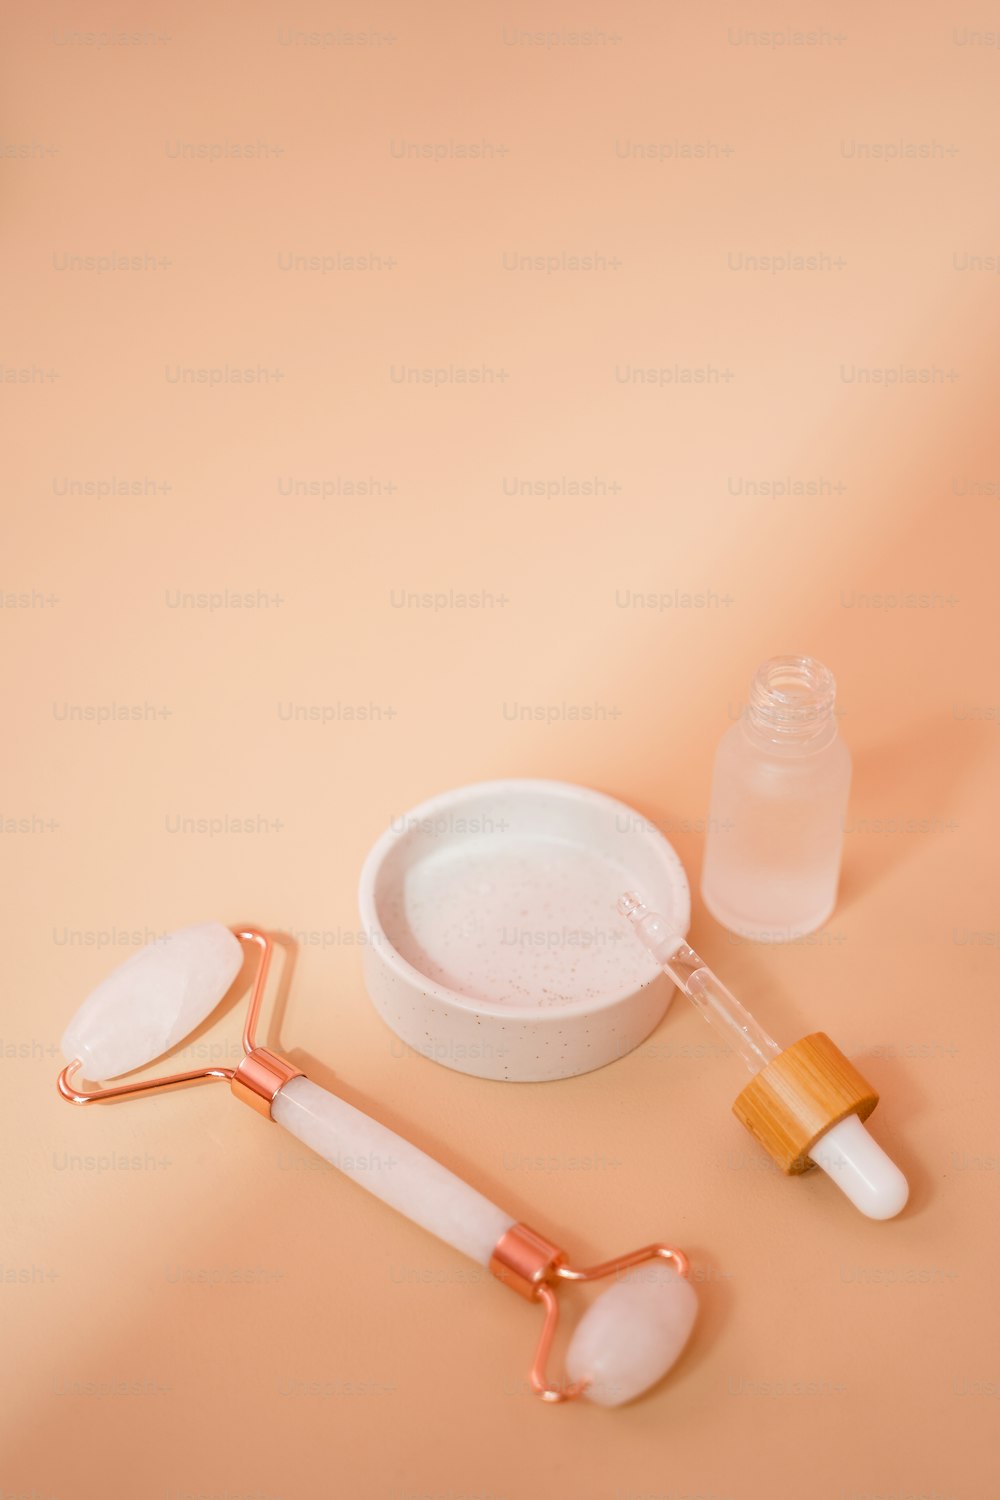 una mesa rosa con un cepillo de dientes, recipiente y otros artículos